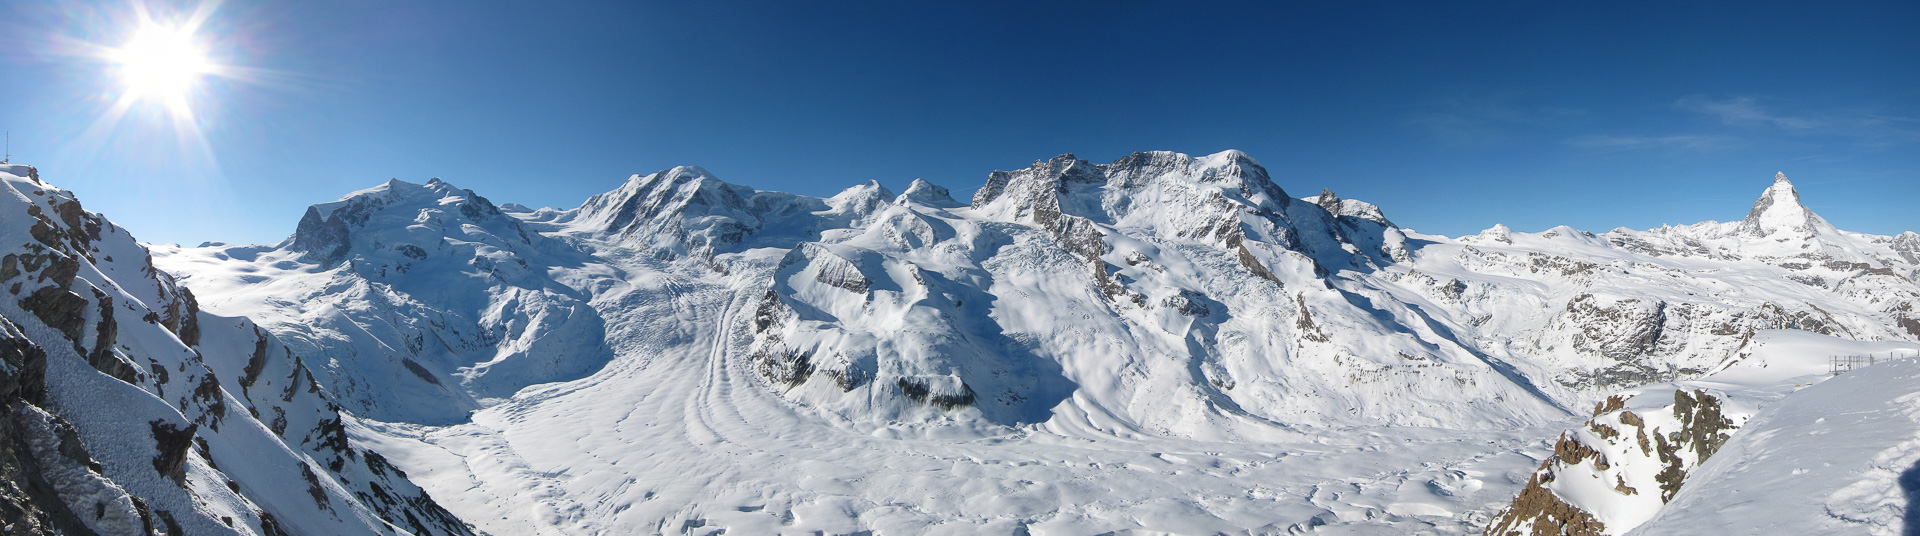 Erstes Panorama bei genialem Wetter: Monte Rosa, Liskamm, Castor, Pollux, Breithorn und Matterhorn.